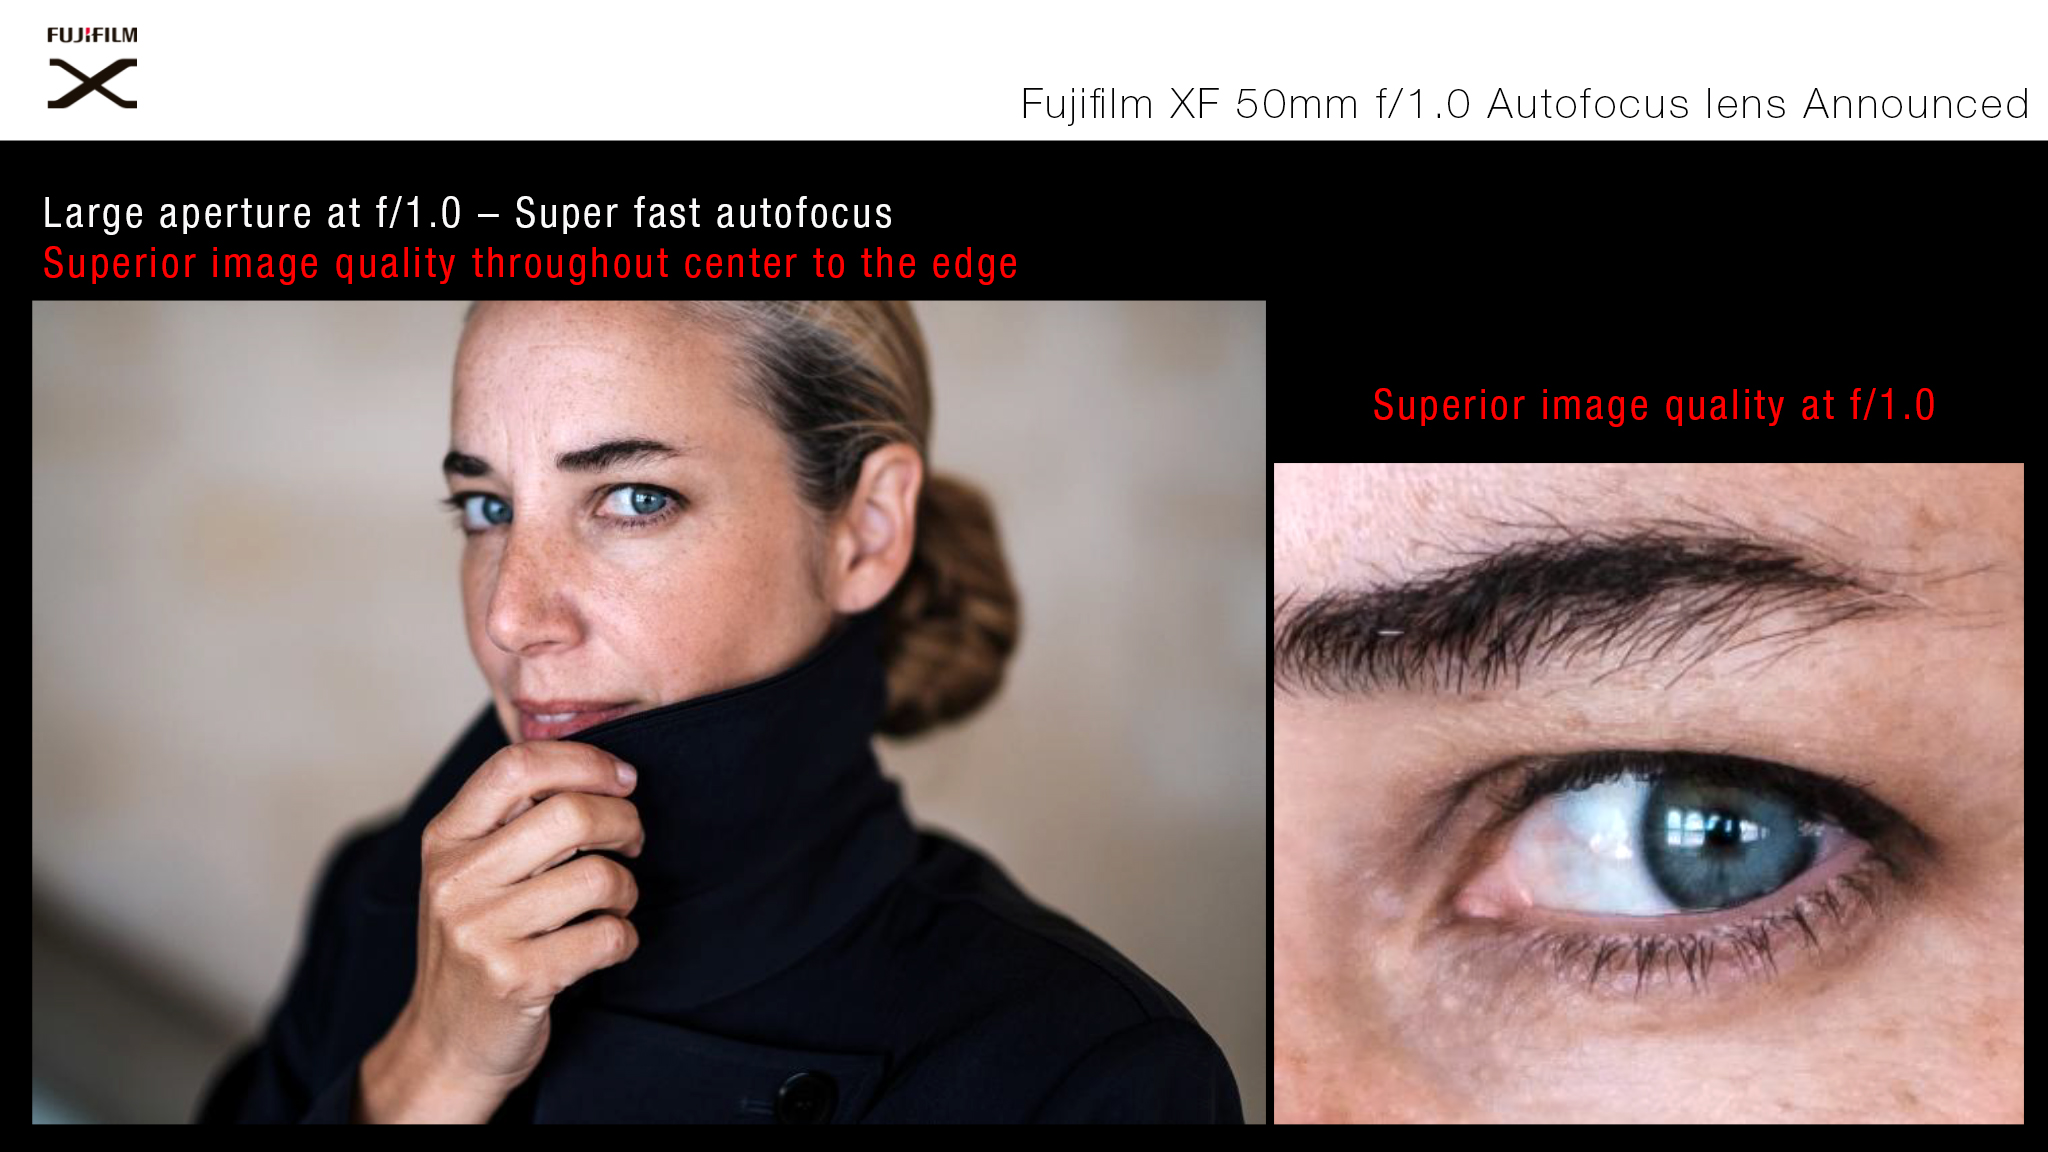 Fujifilm XF 50mmF1.0 R WR